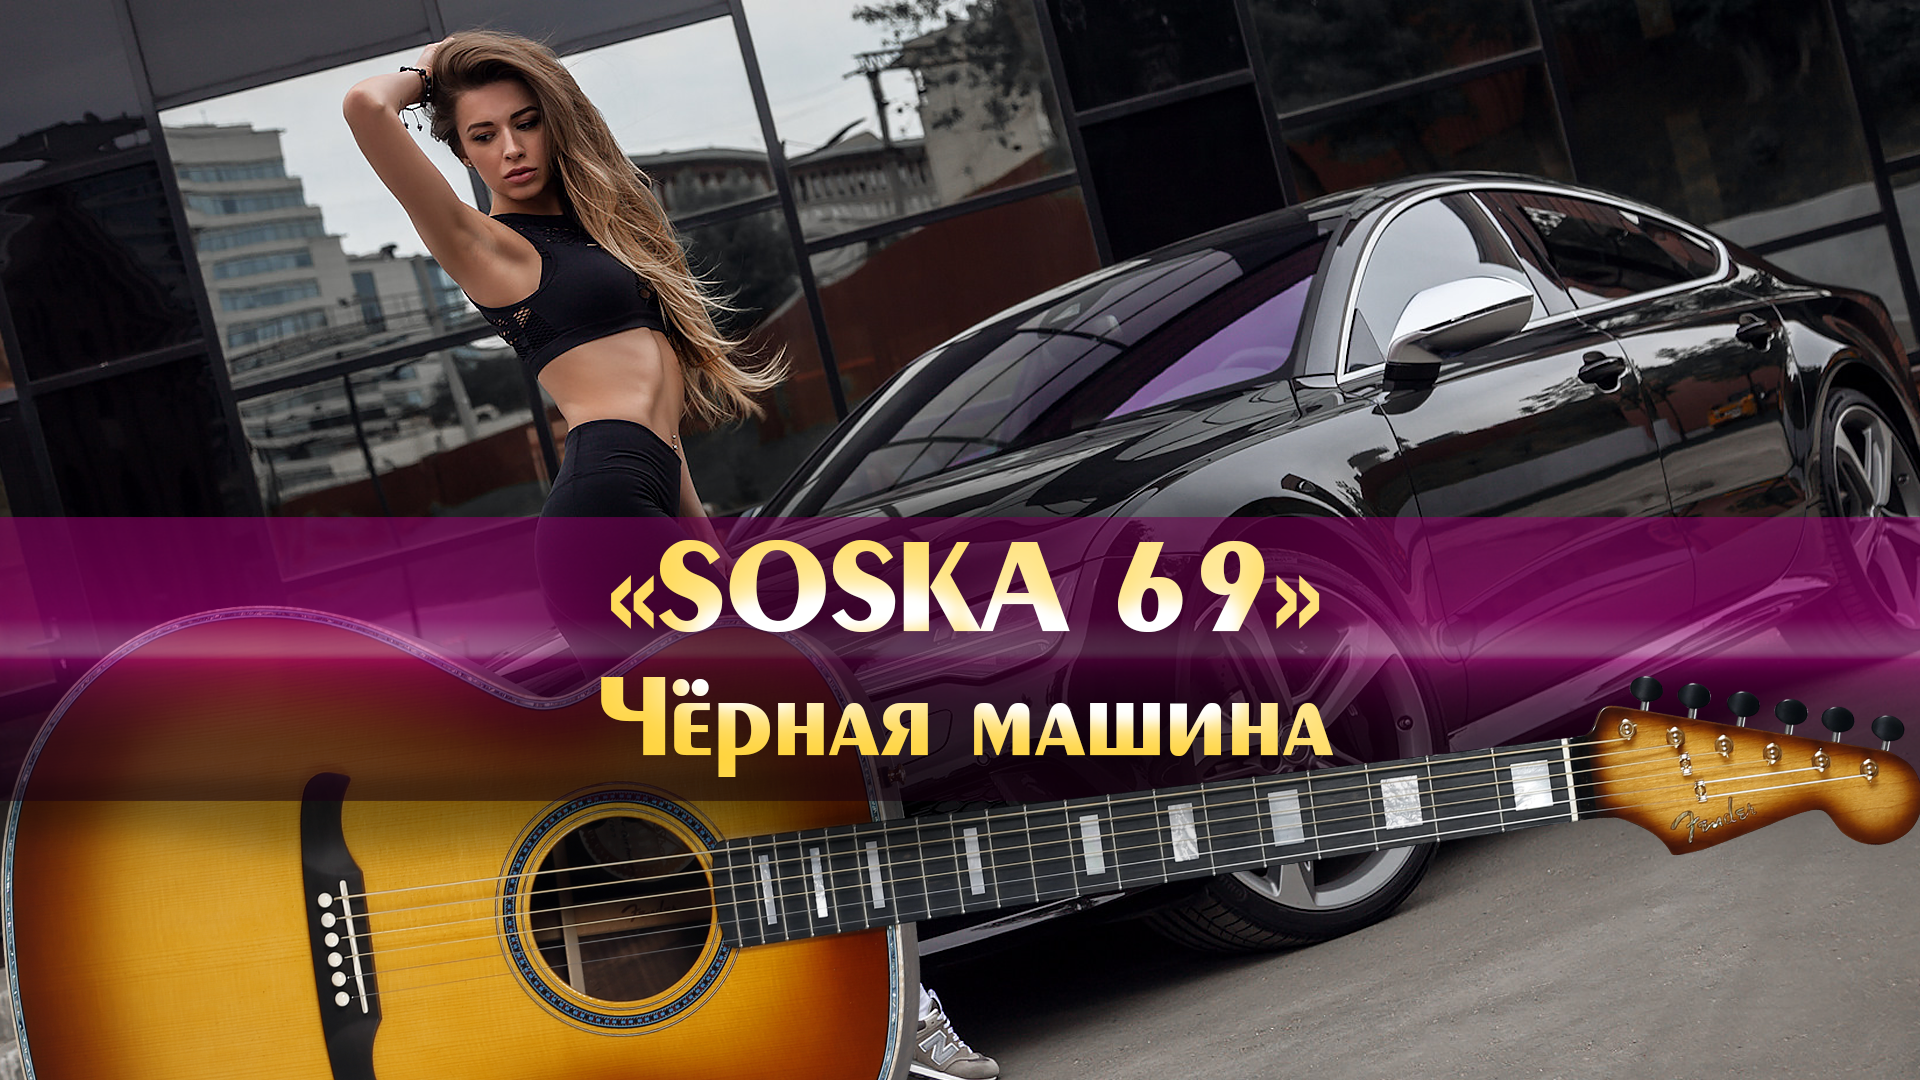 Песня черная машина soska 69. Чёрная машина soska69. Соска 69 чёрная машина. Soska69 песни чёрная машина. Соска в машине.